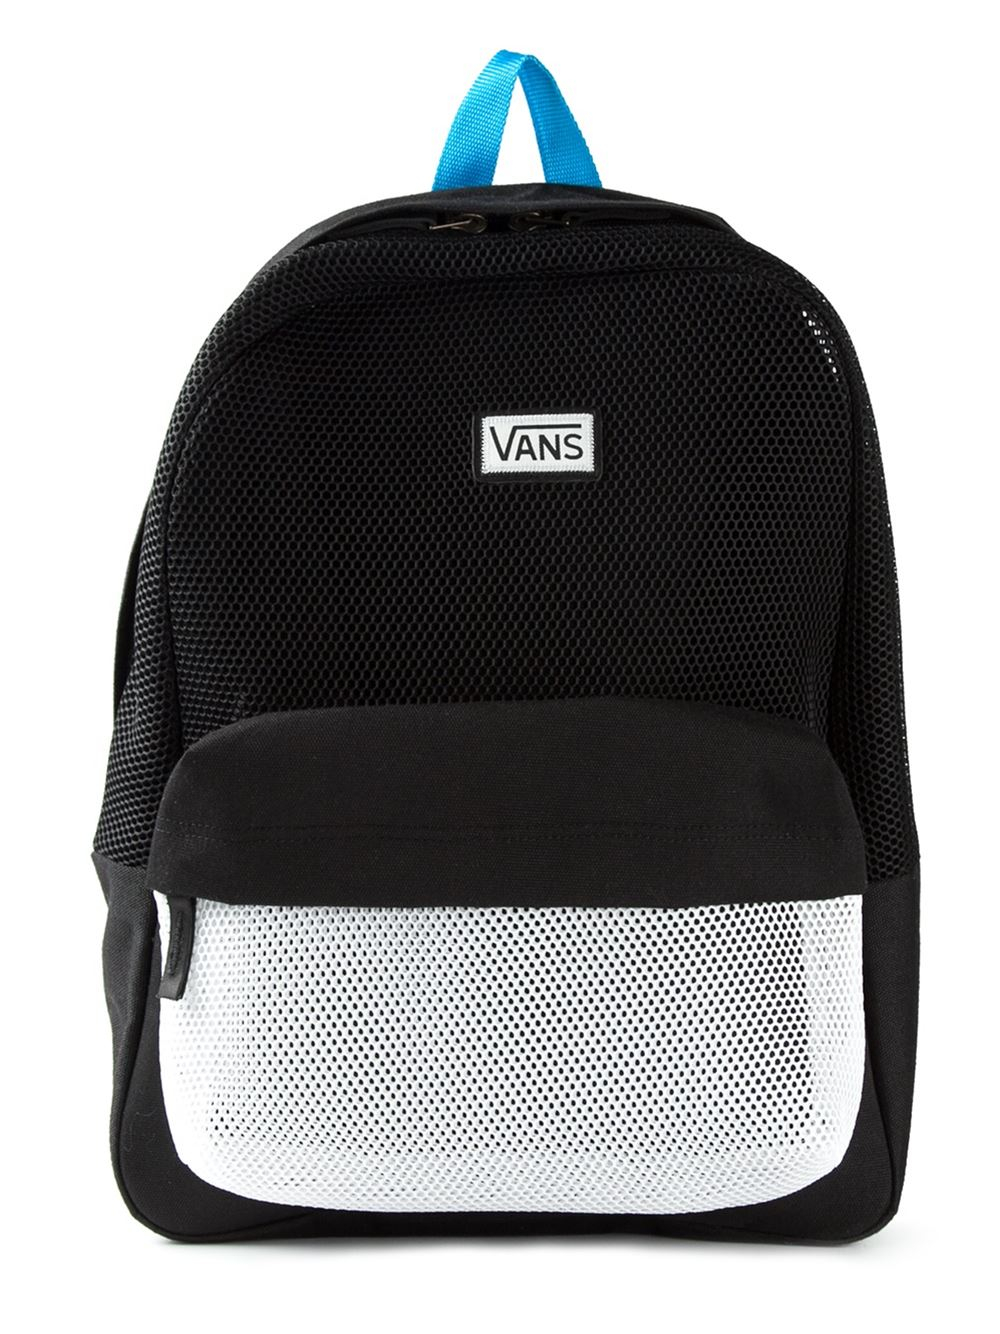 vans backpack 2015